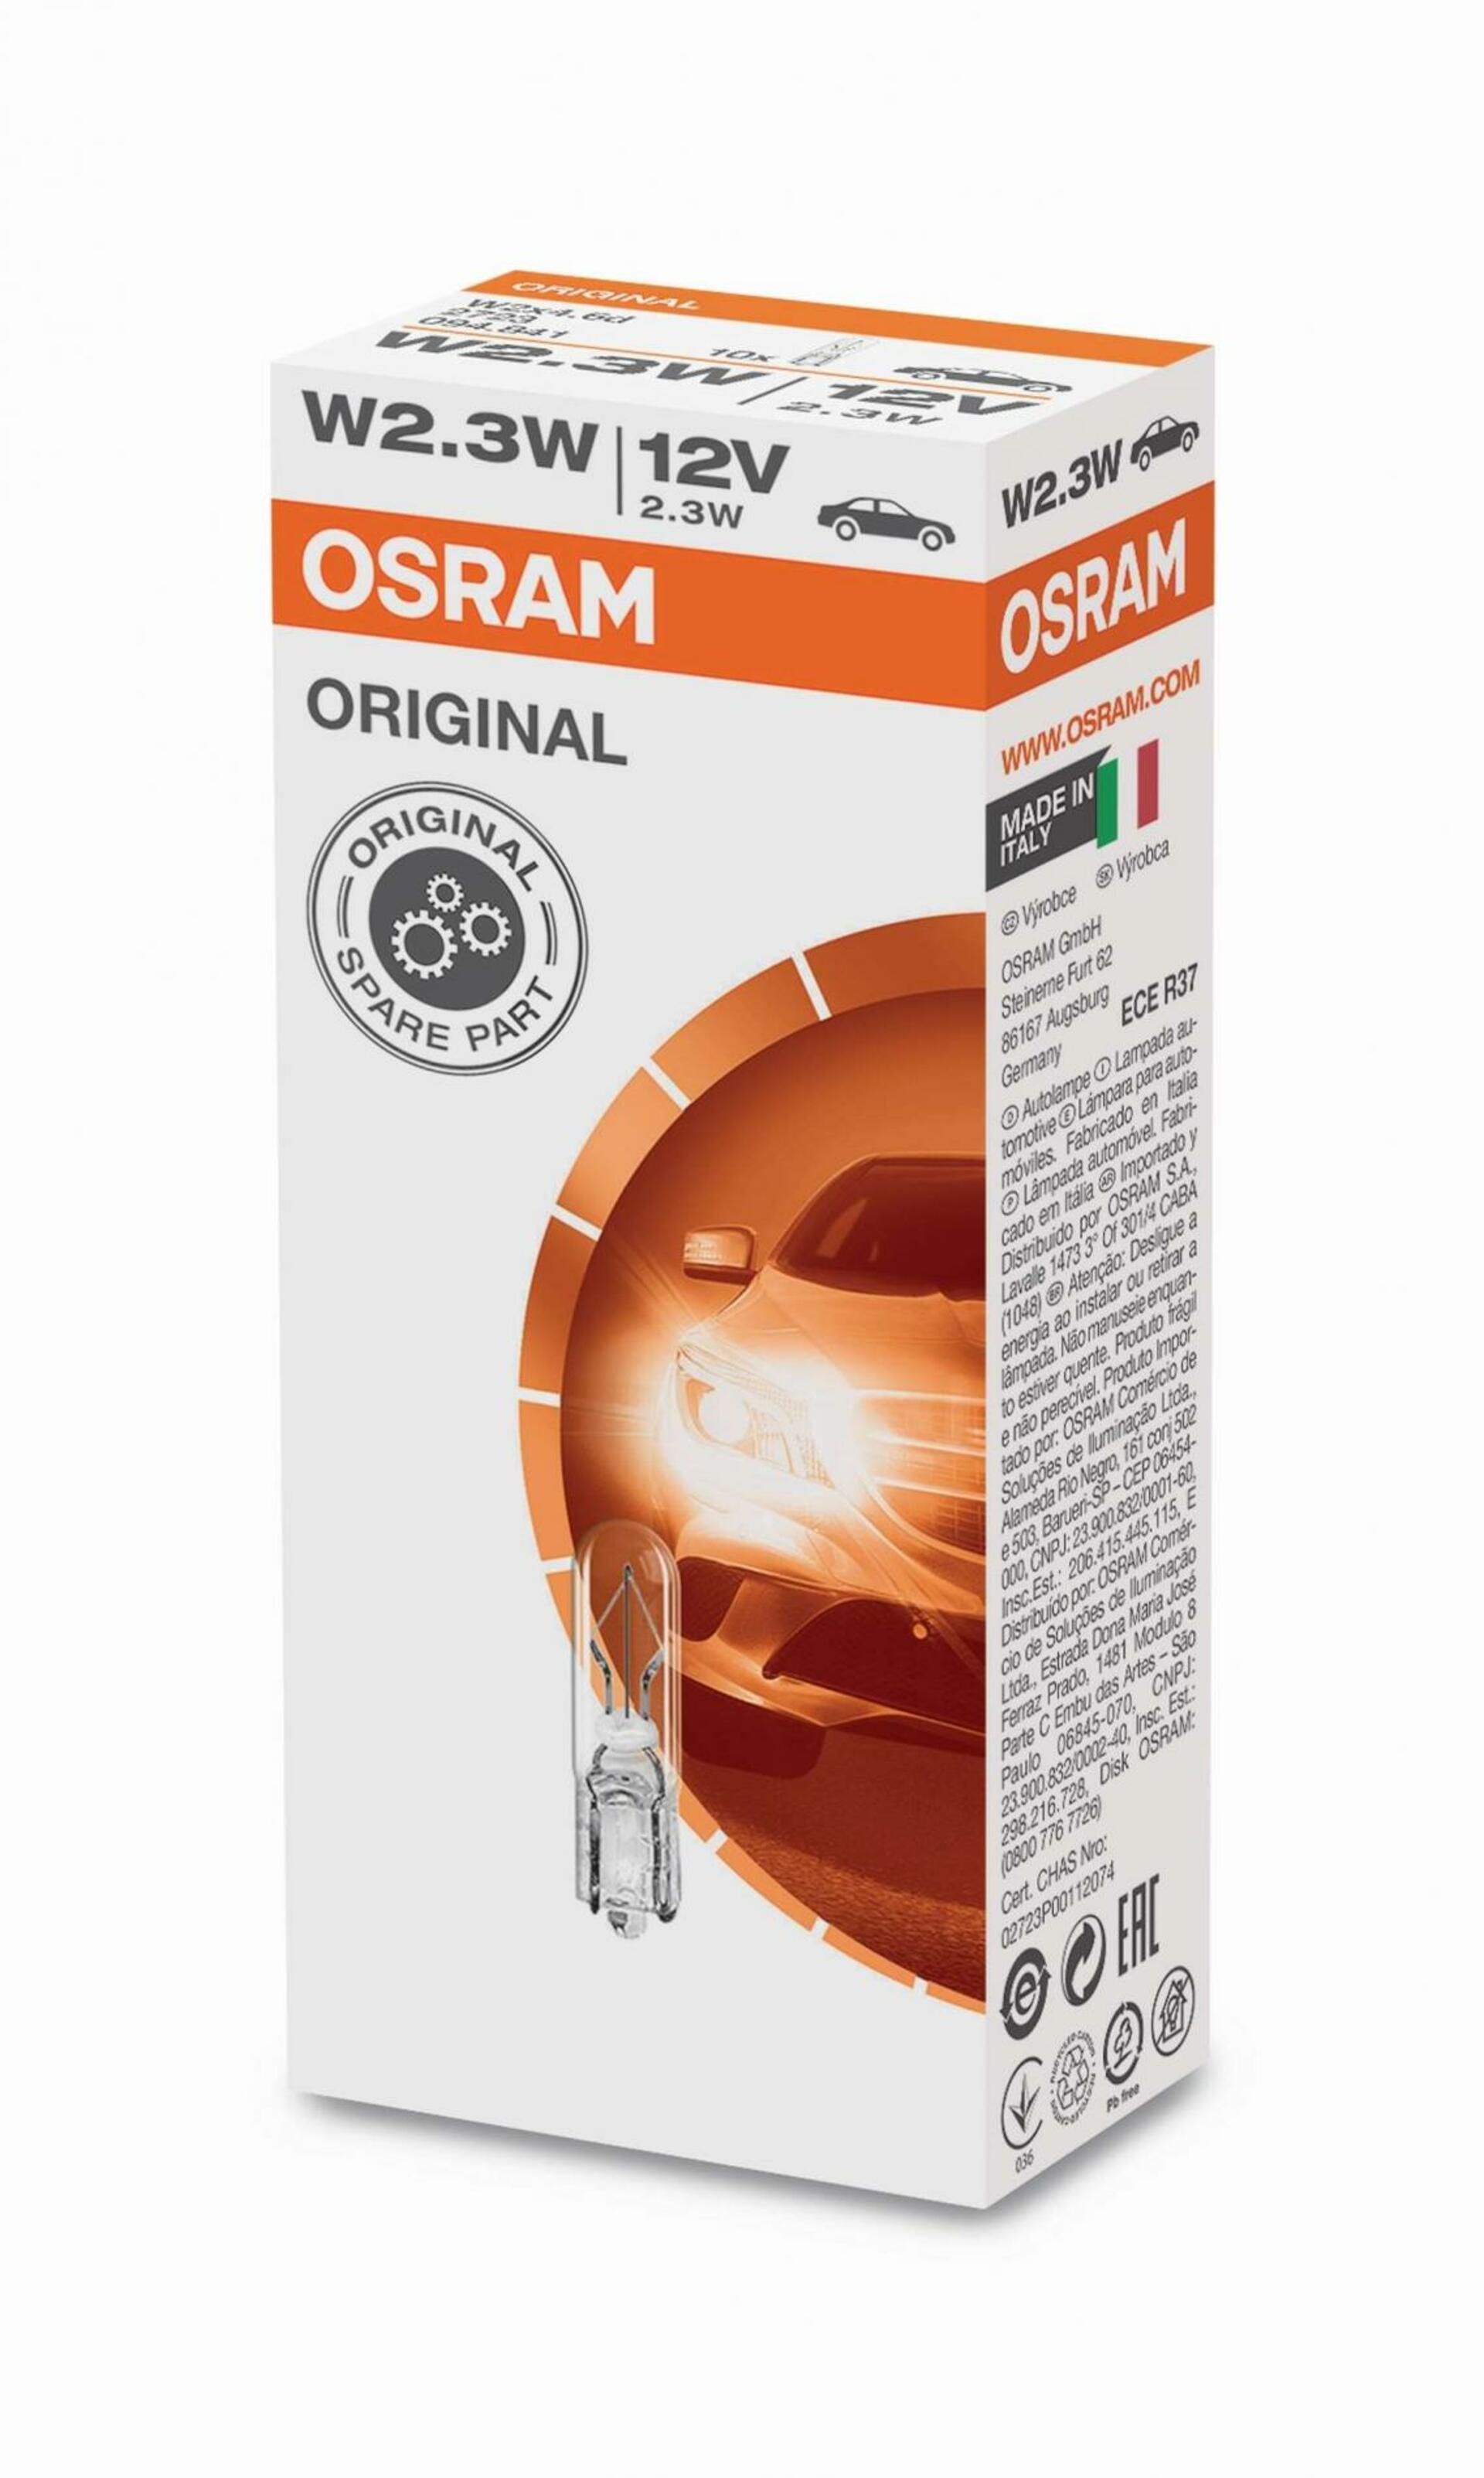 OSRAM W2,3W  2723 12V